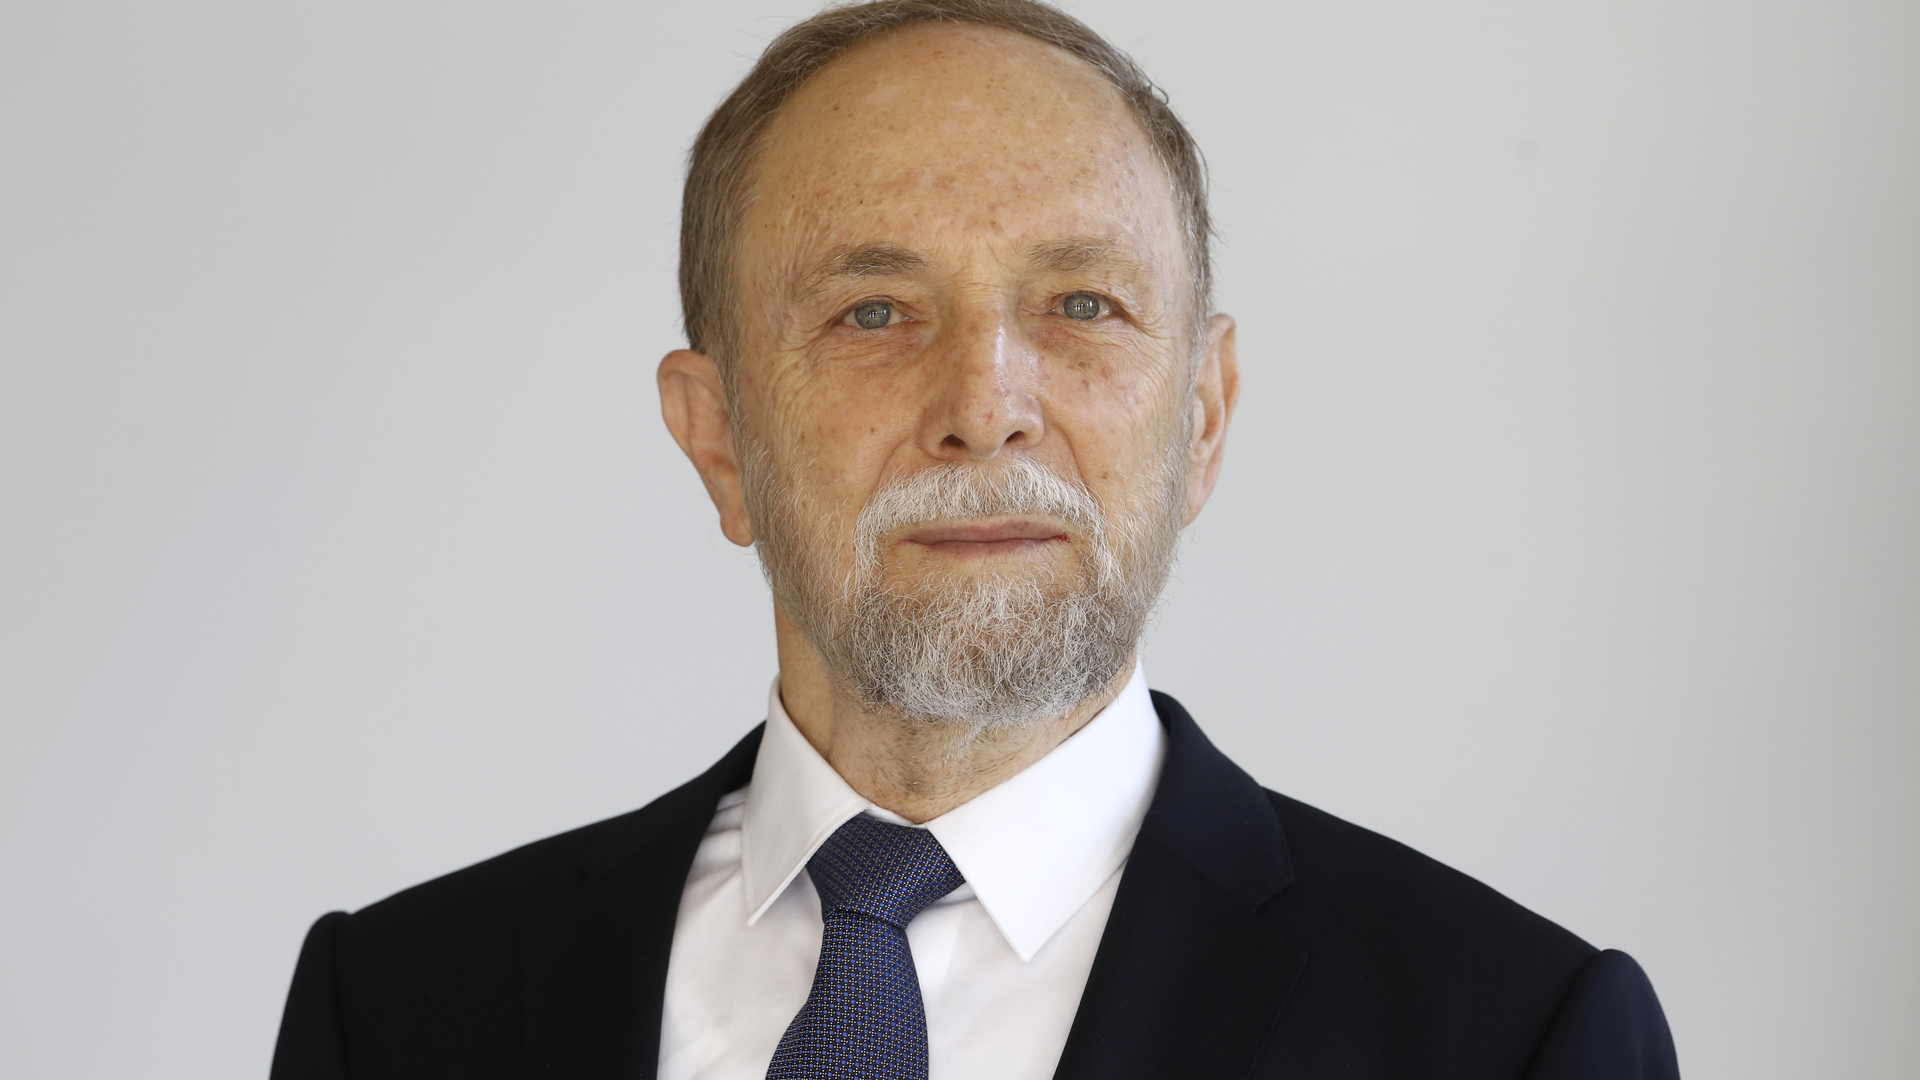 David Wallach ist seit 1995 ordentlicher Professor am Weizmann-Institut in Rehovot